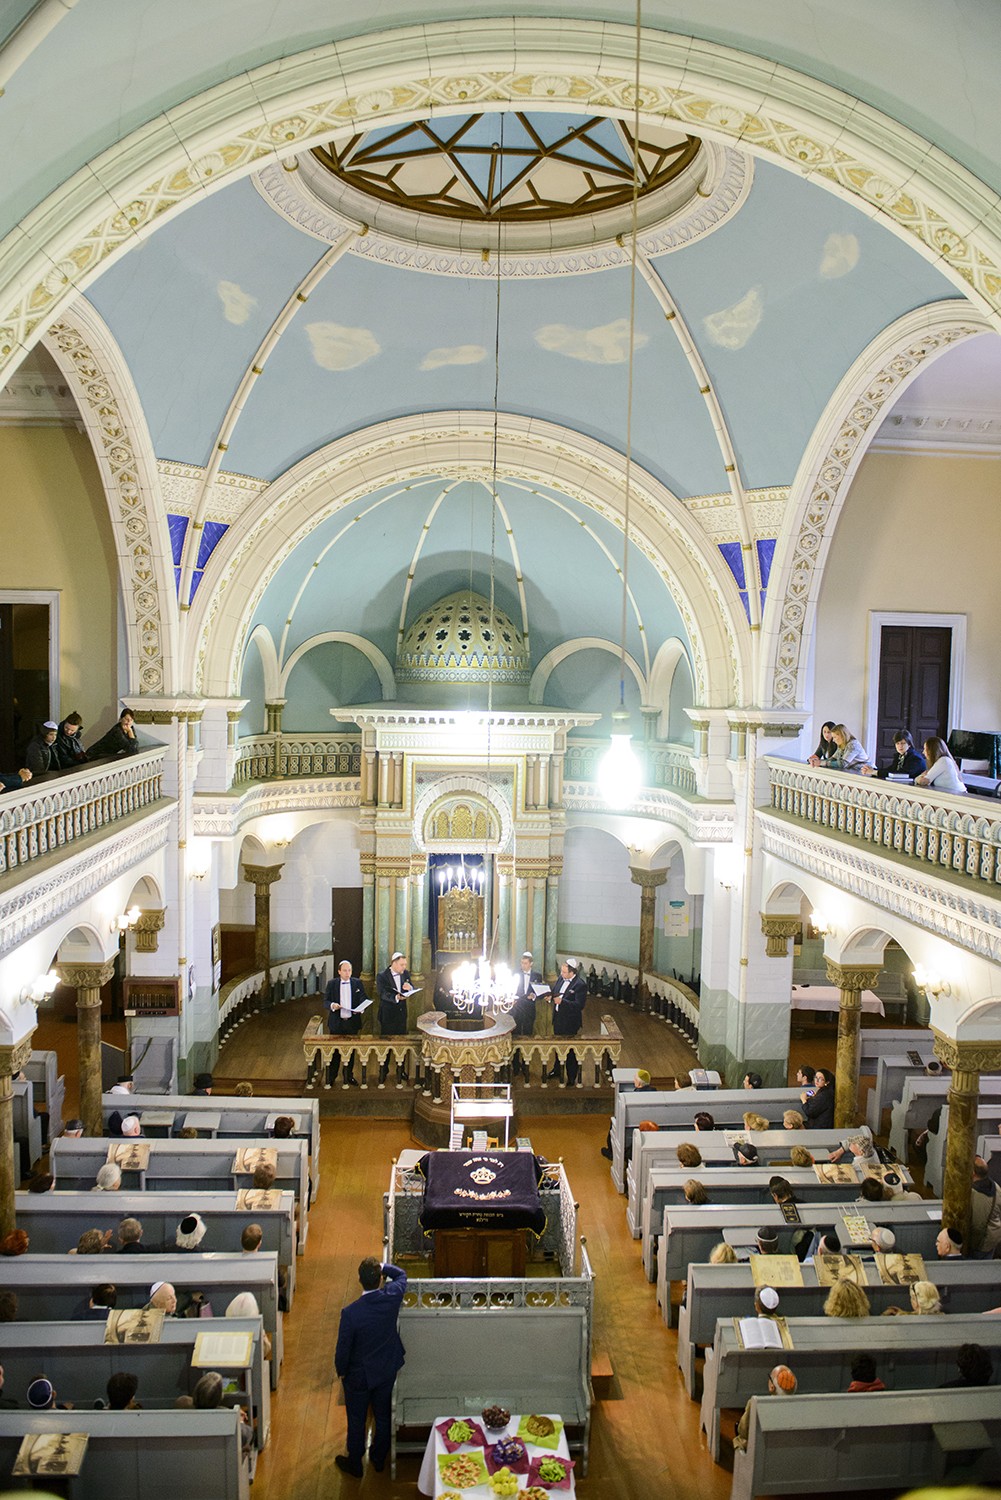 Еврейская религиозная община Вильнюса приглашает вас в синагогу на молитву в Йом Кипур – День Искупления